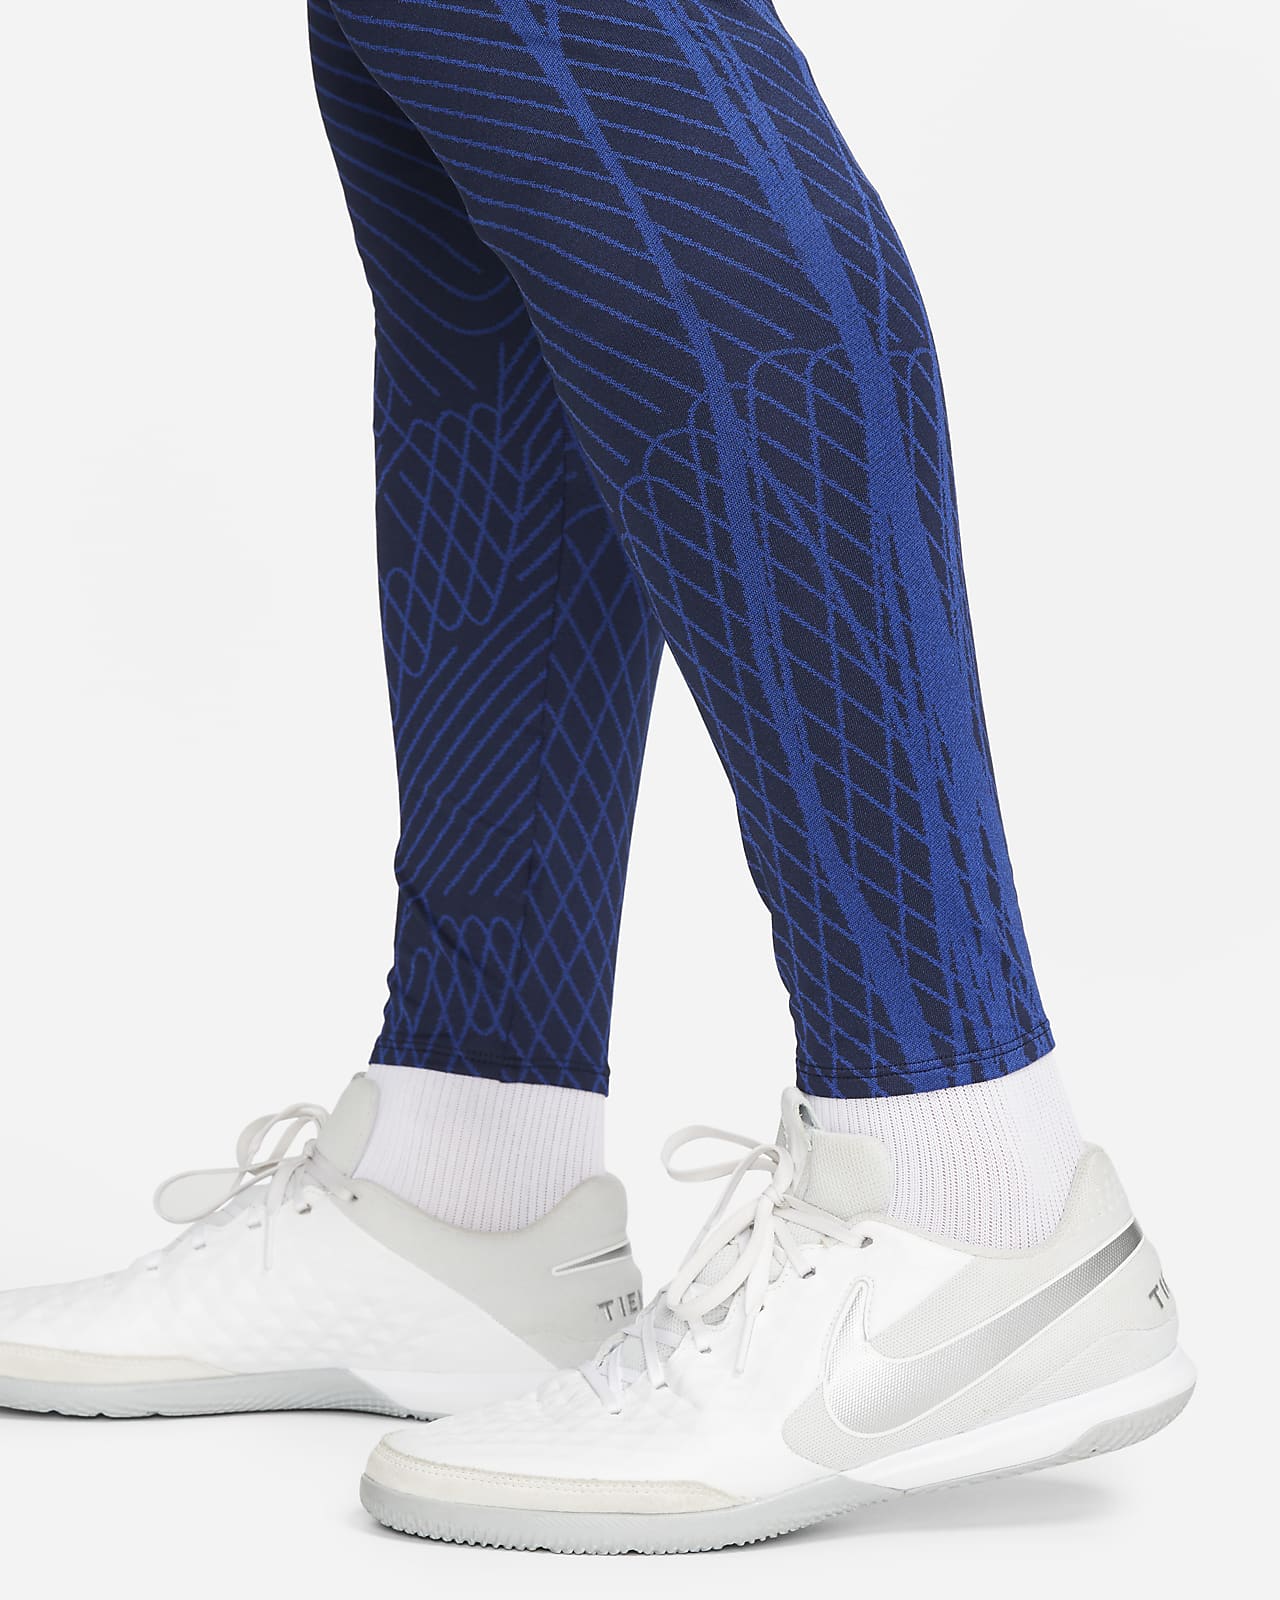 Schots dronken meisje U.S. Strike Men's Nike Dri-FIT Knit Soccer Pants. Nike.com